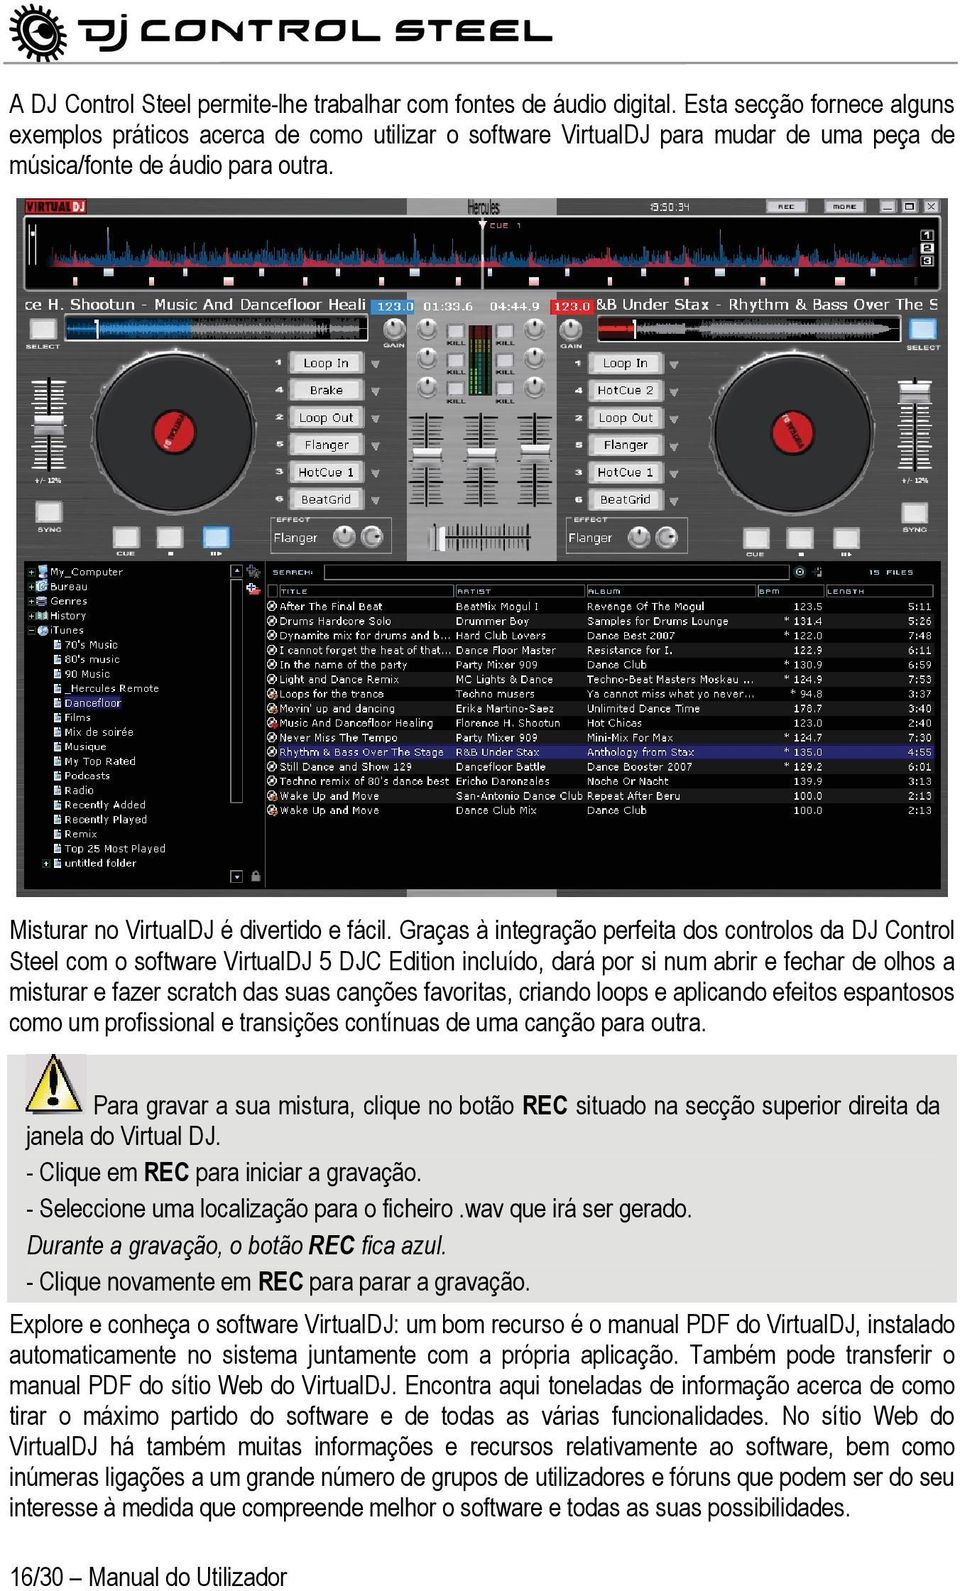 Graças à integração perfeita dos controlos da DJ Control Steel com o software VirtualDJ 5 DJC Edition incluído, dará por si num abrir e fechar de olhos a misturar e fazer scratch das suas canções